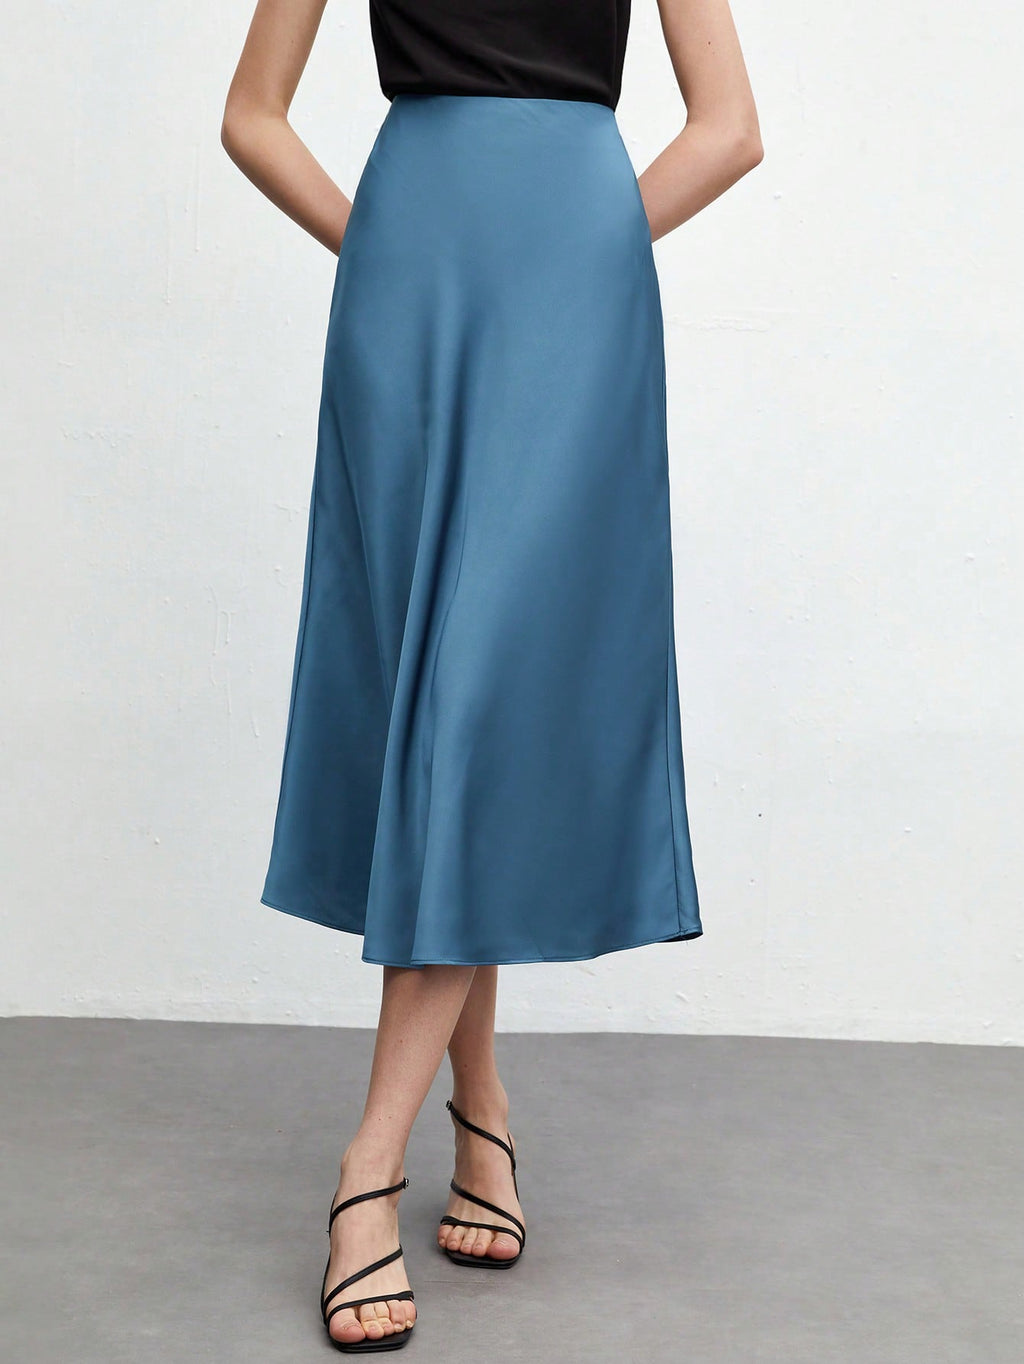 SHEIN BIZwear Solid A-line Satin Skirt Workwear